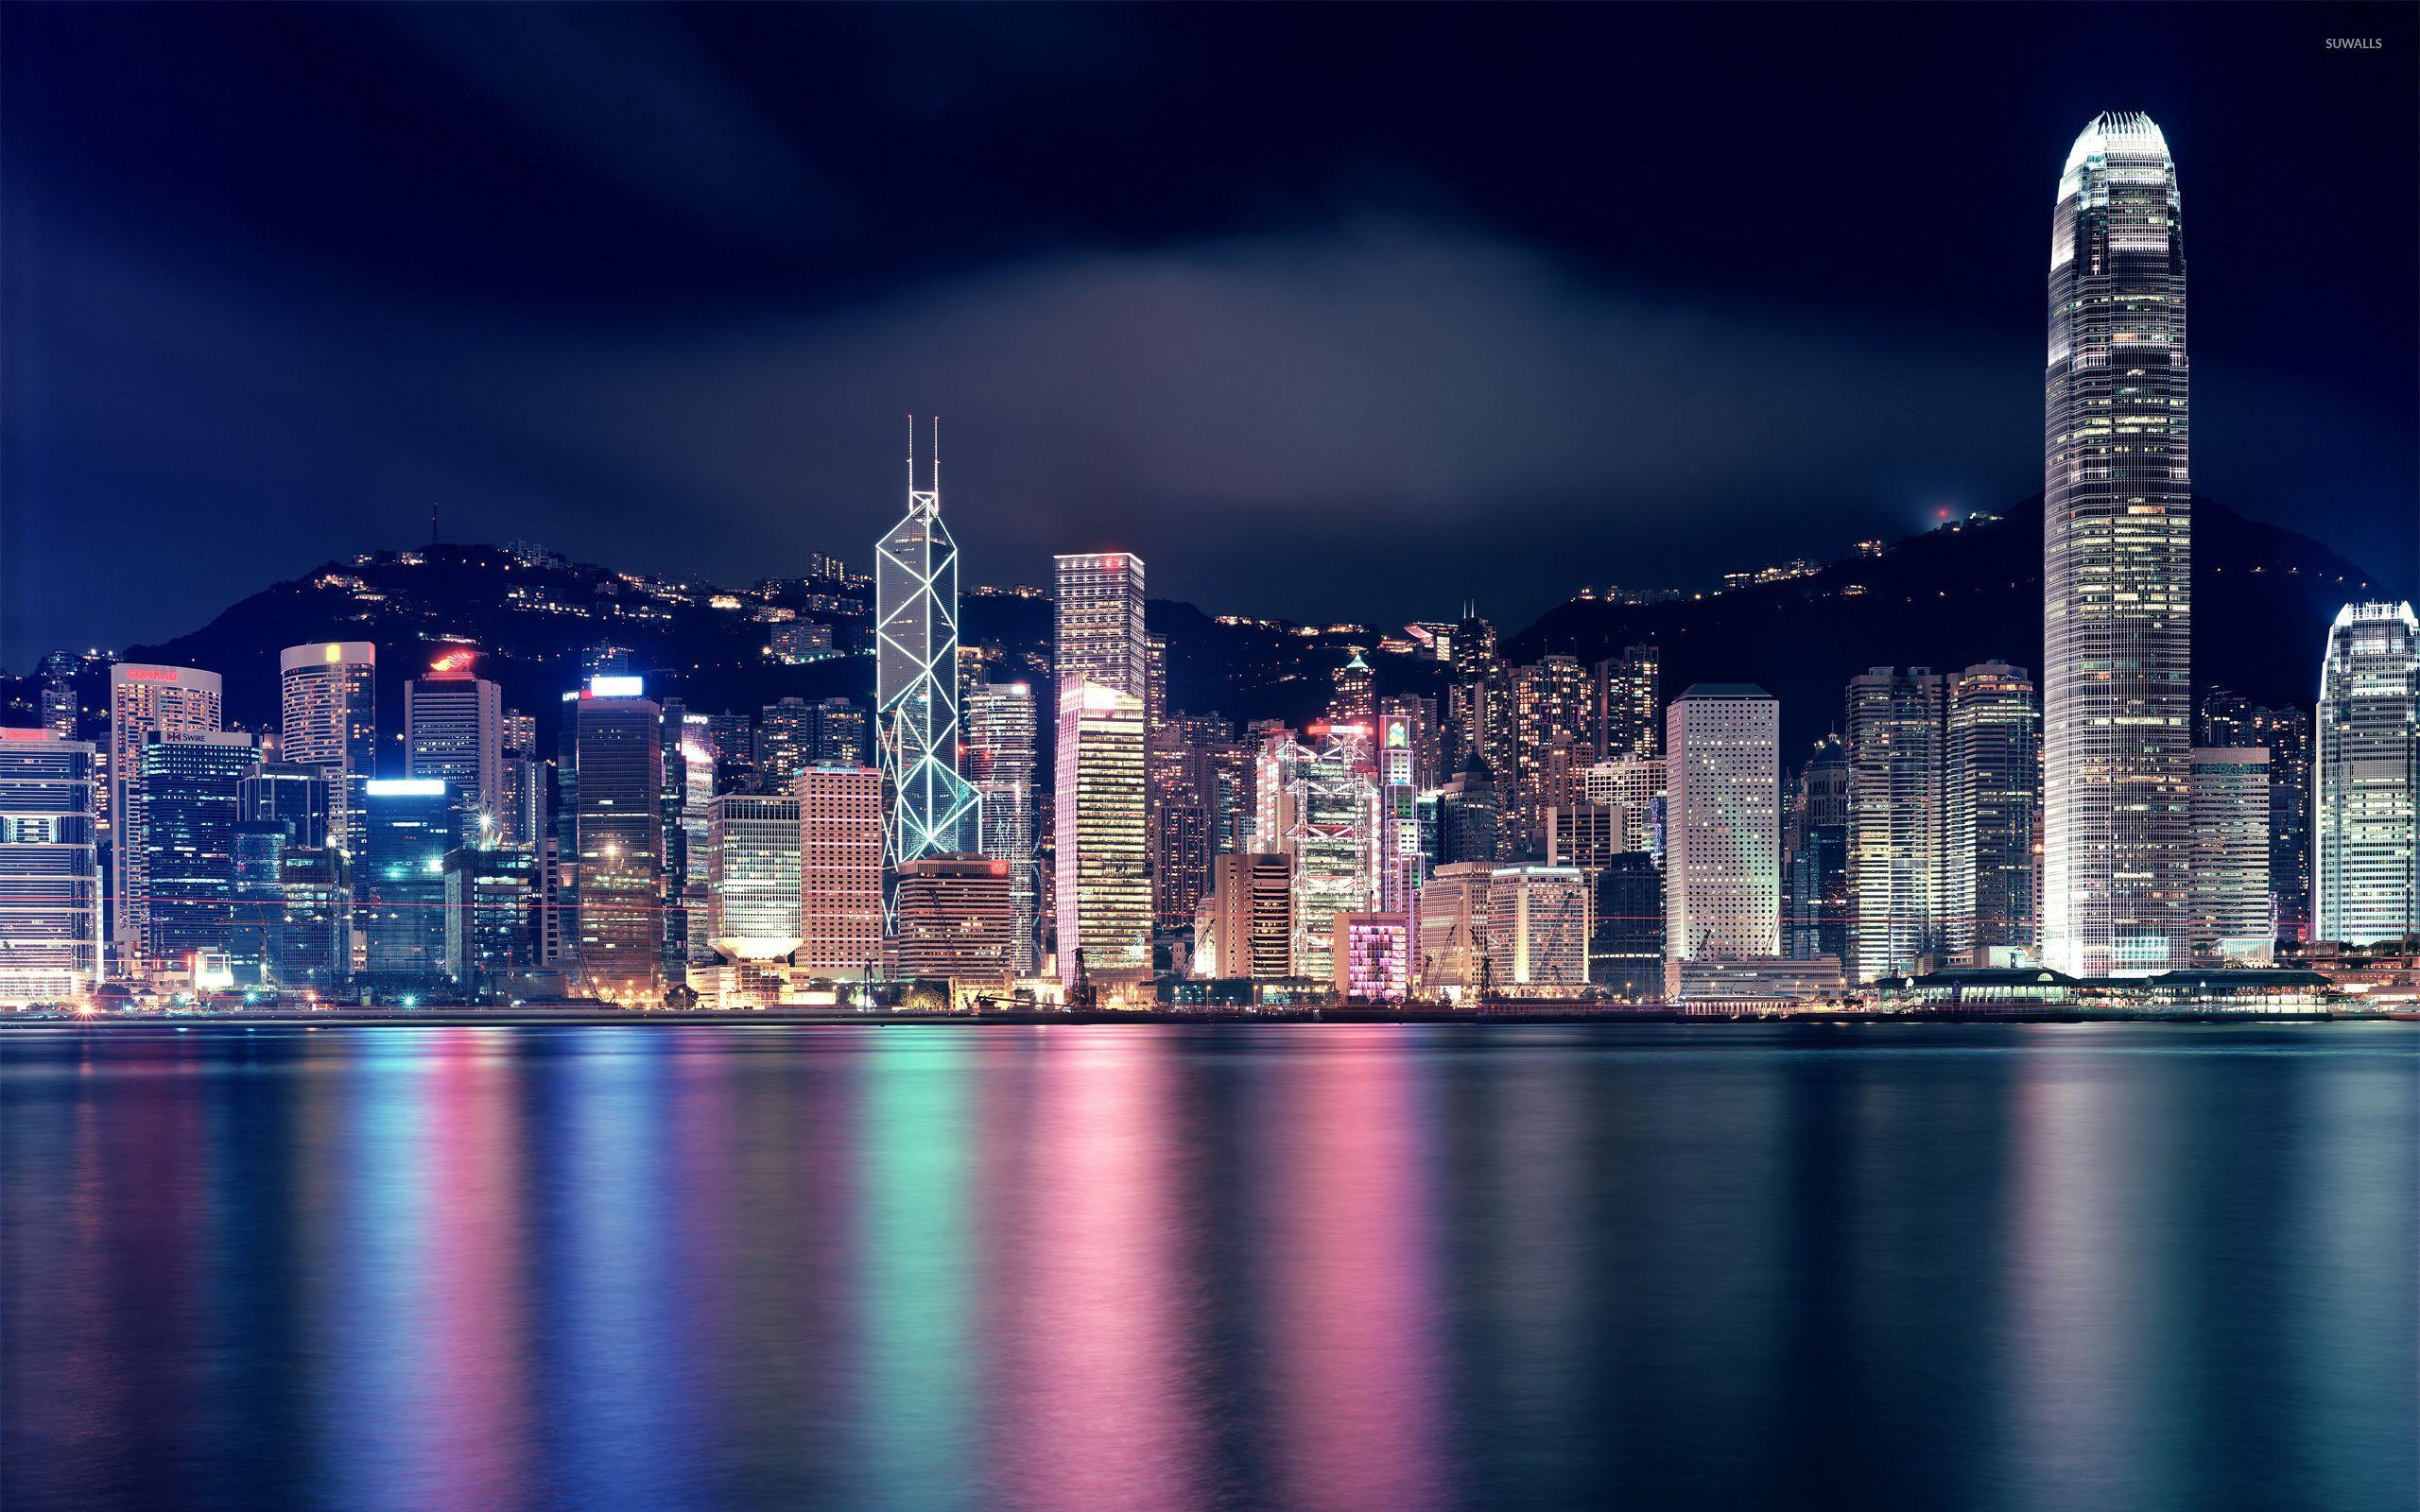 Hình nền Hong Kong: Thiết lập hình nền mới cho thiết bị của bạn với những cảnh vật đẹp nhất của Hong Kong. Từ tòa nhà Victoria Peak cho đến những cảnh quan đường phố, hình nền Hong Kong sẽ mang lại cho bạn một trải nghiệm tuyệt vời. Tải xuống miễn phí và trang trí cho thiết bị của bạn ngay bây giờ.